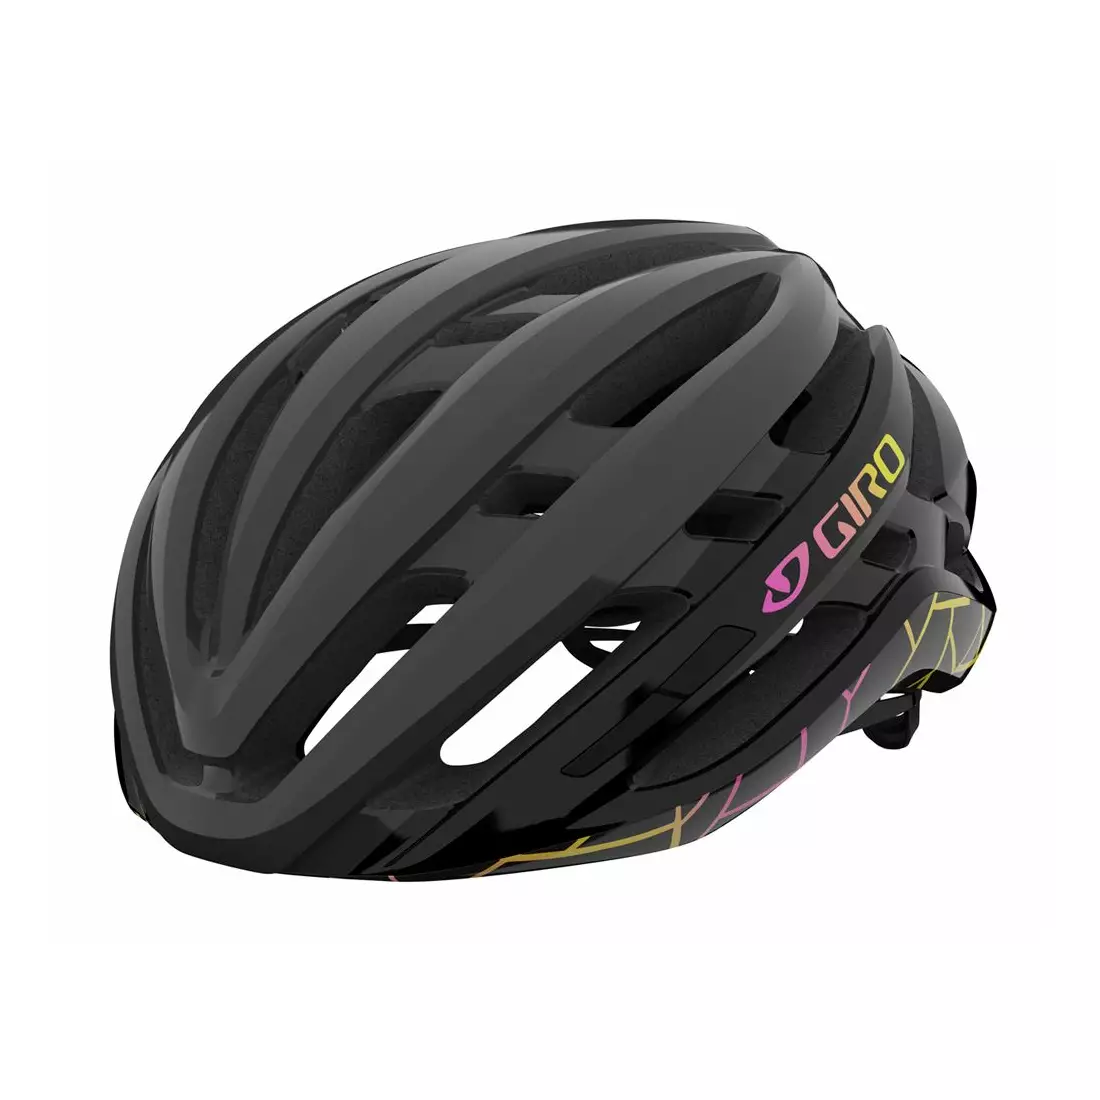 GIRO women's road bicycle helmet AGILIS INTEGRATED MIPS W black craze GR-7129688